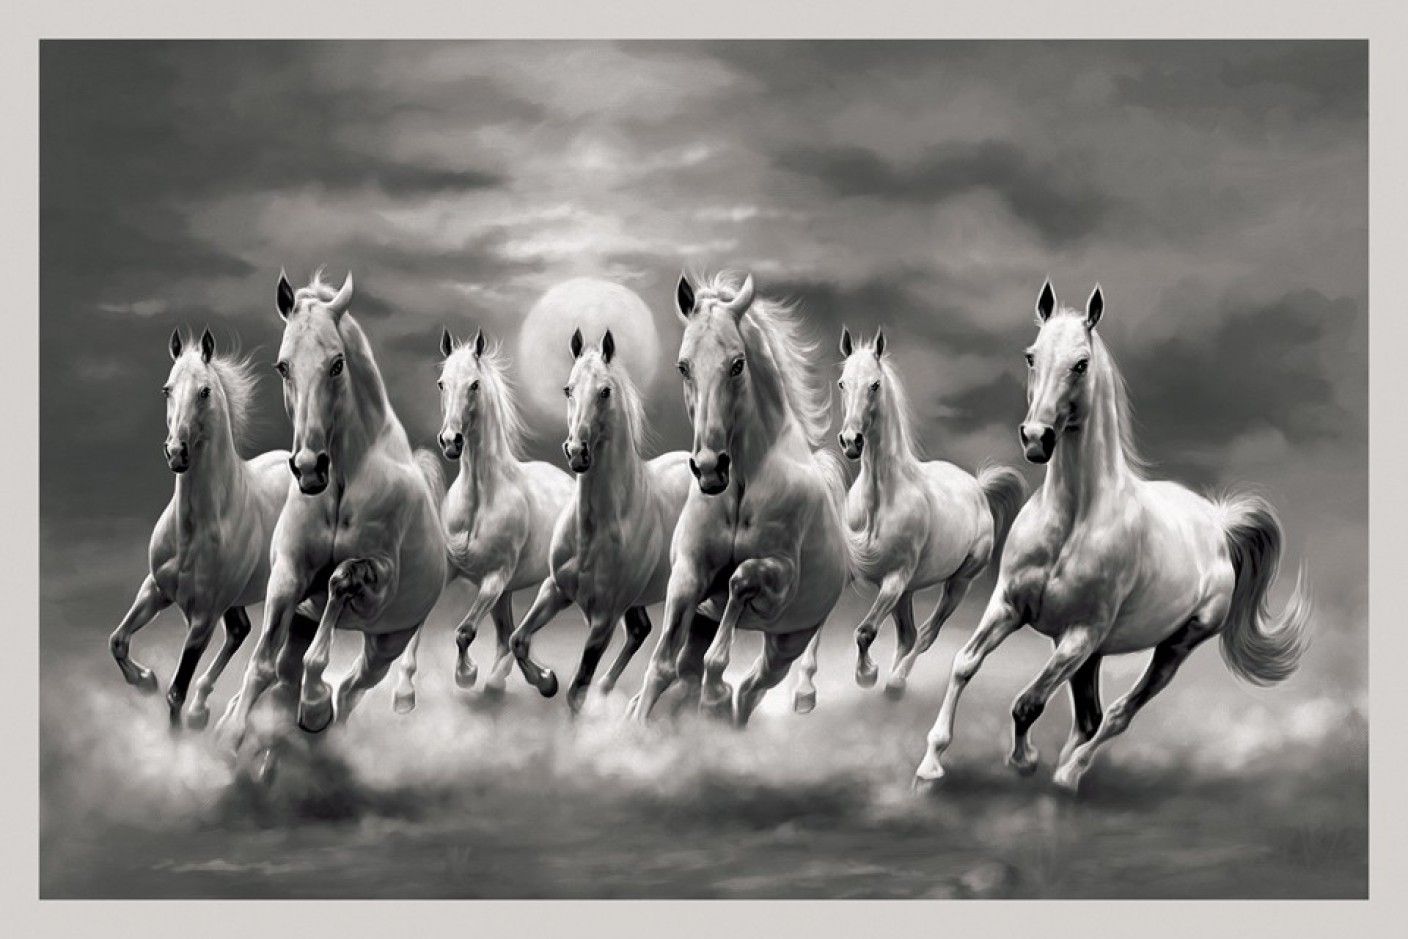 Bộ ảnh nền desktop 7 ngựa chạy sẽ khiến bạn thích thú bởi cảnh tượng đẹp như mơ của những con ngựa đang phiêu lưu trên đồng cỏ xanh. Hãy đắm chìm vào không gian thiên nhiên tươi đẹp và tải ngay bộ ảnh này để trang trí máy tính của mình.